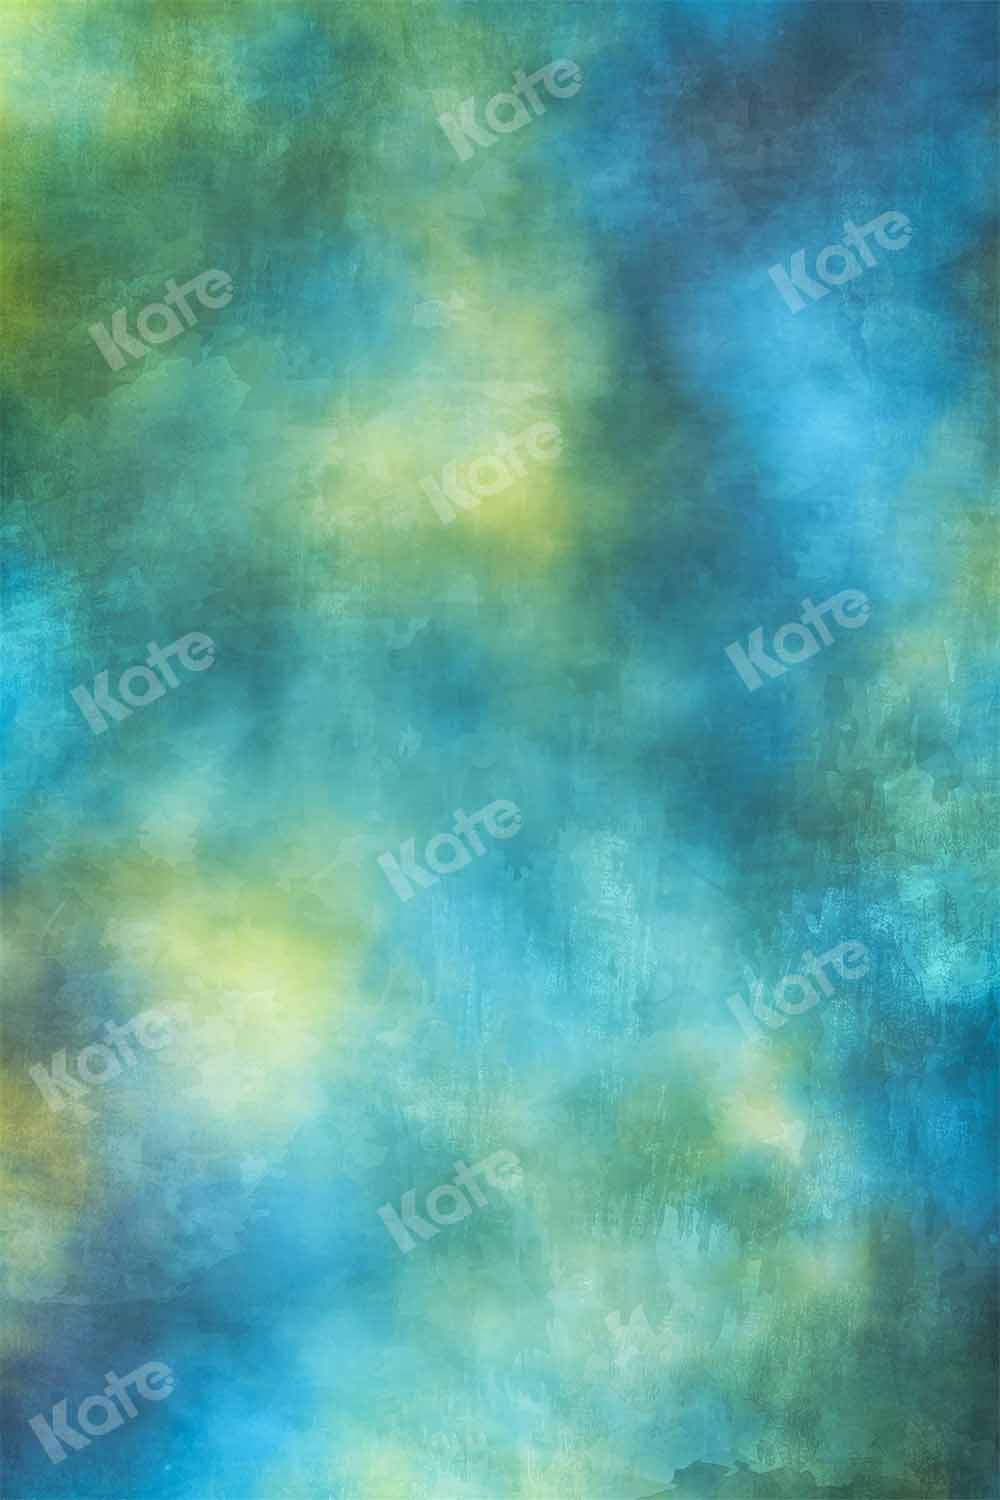 Kate青緑色の背景の抽象的なテクスチャ背景Kate Image